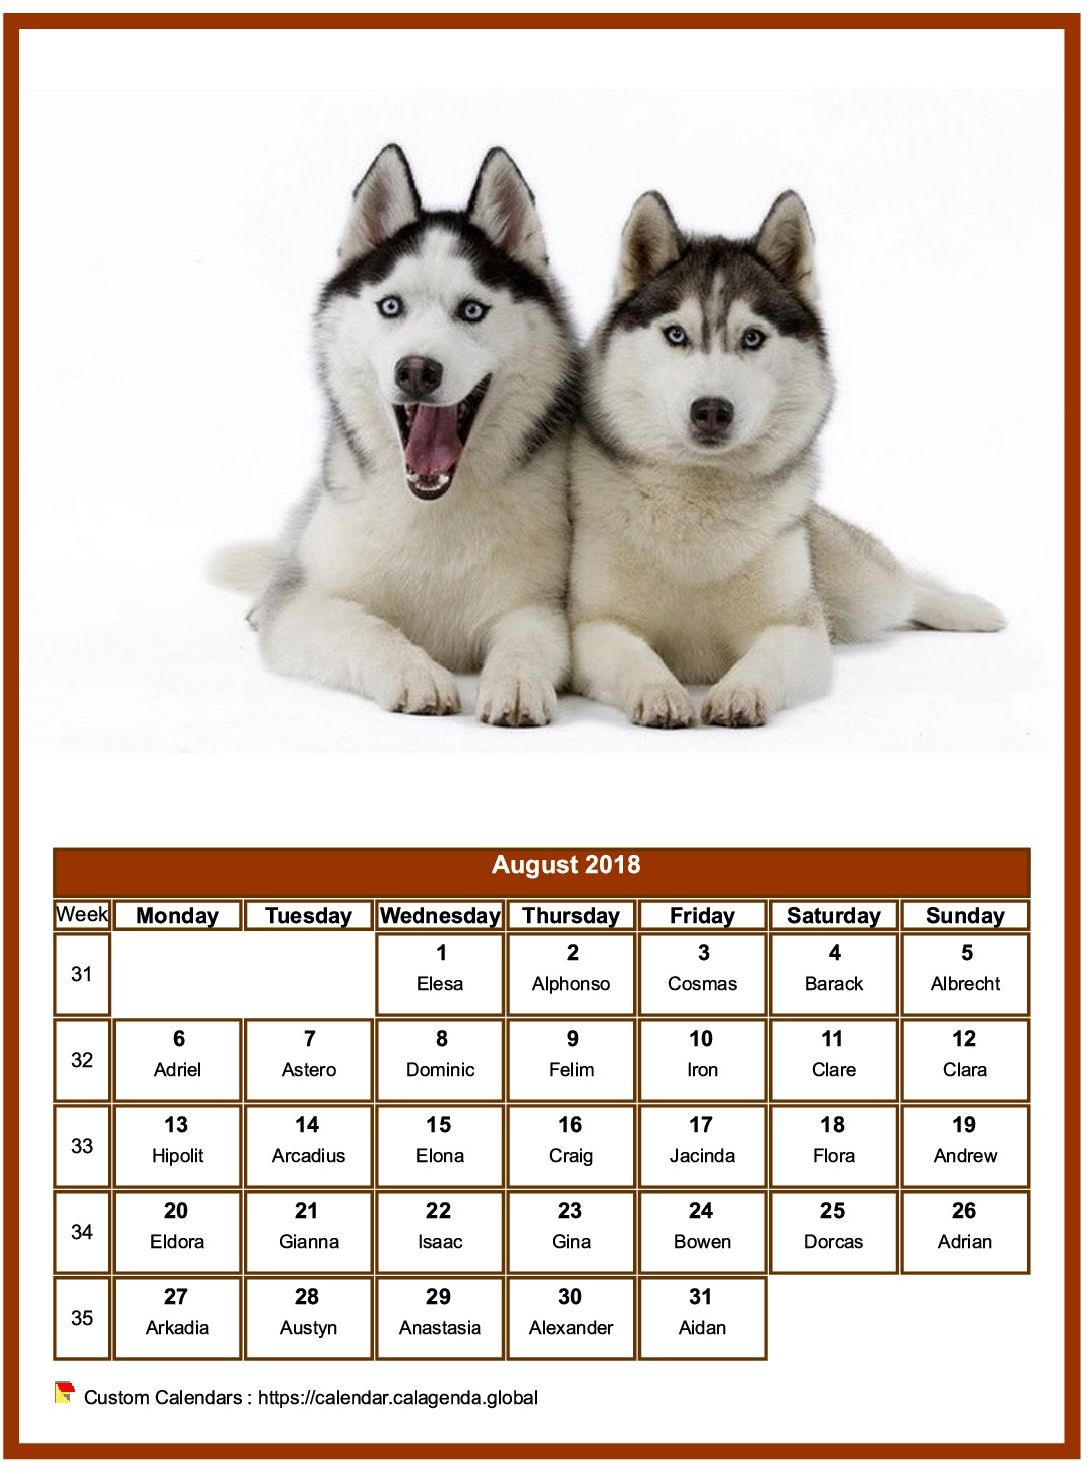 Calendar August 2018 dogs